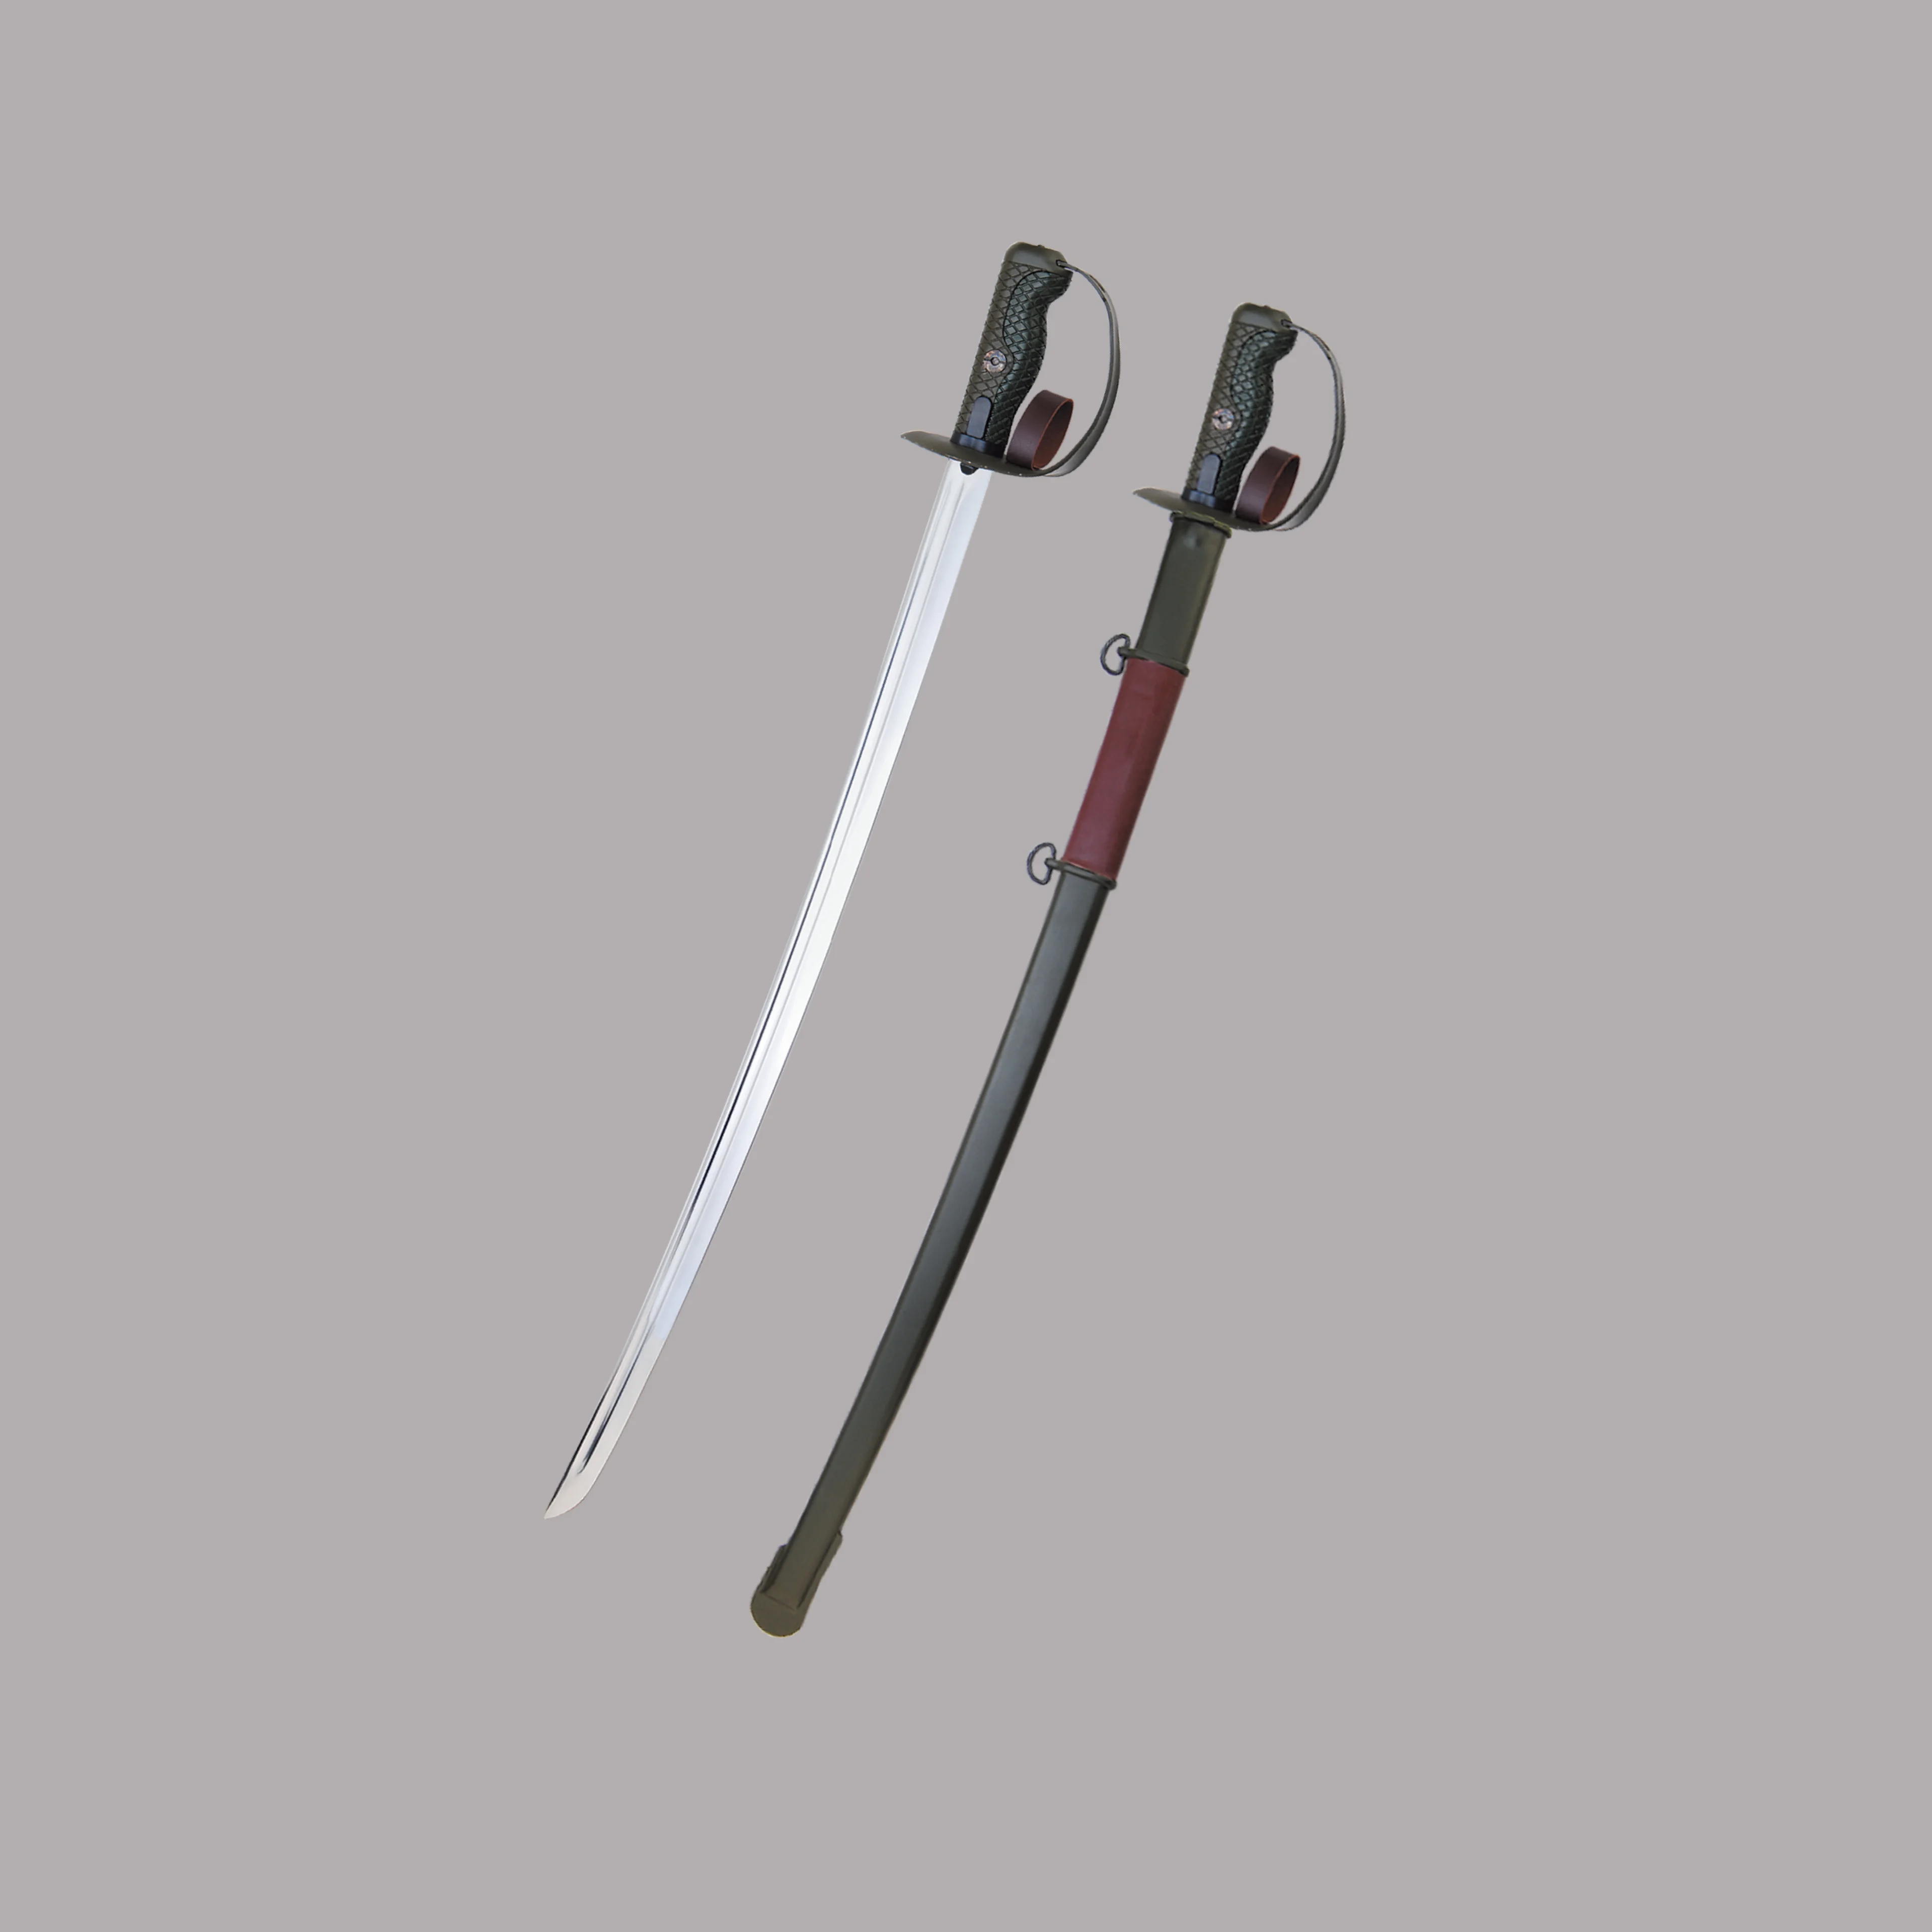 65騎兵swordby080 C1中国刀侍刀by080 C1 Buy 剣 中国の剣 サムライ剣 Product On Alibaba Com